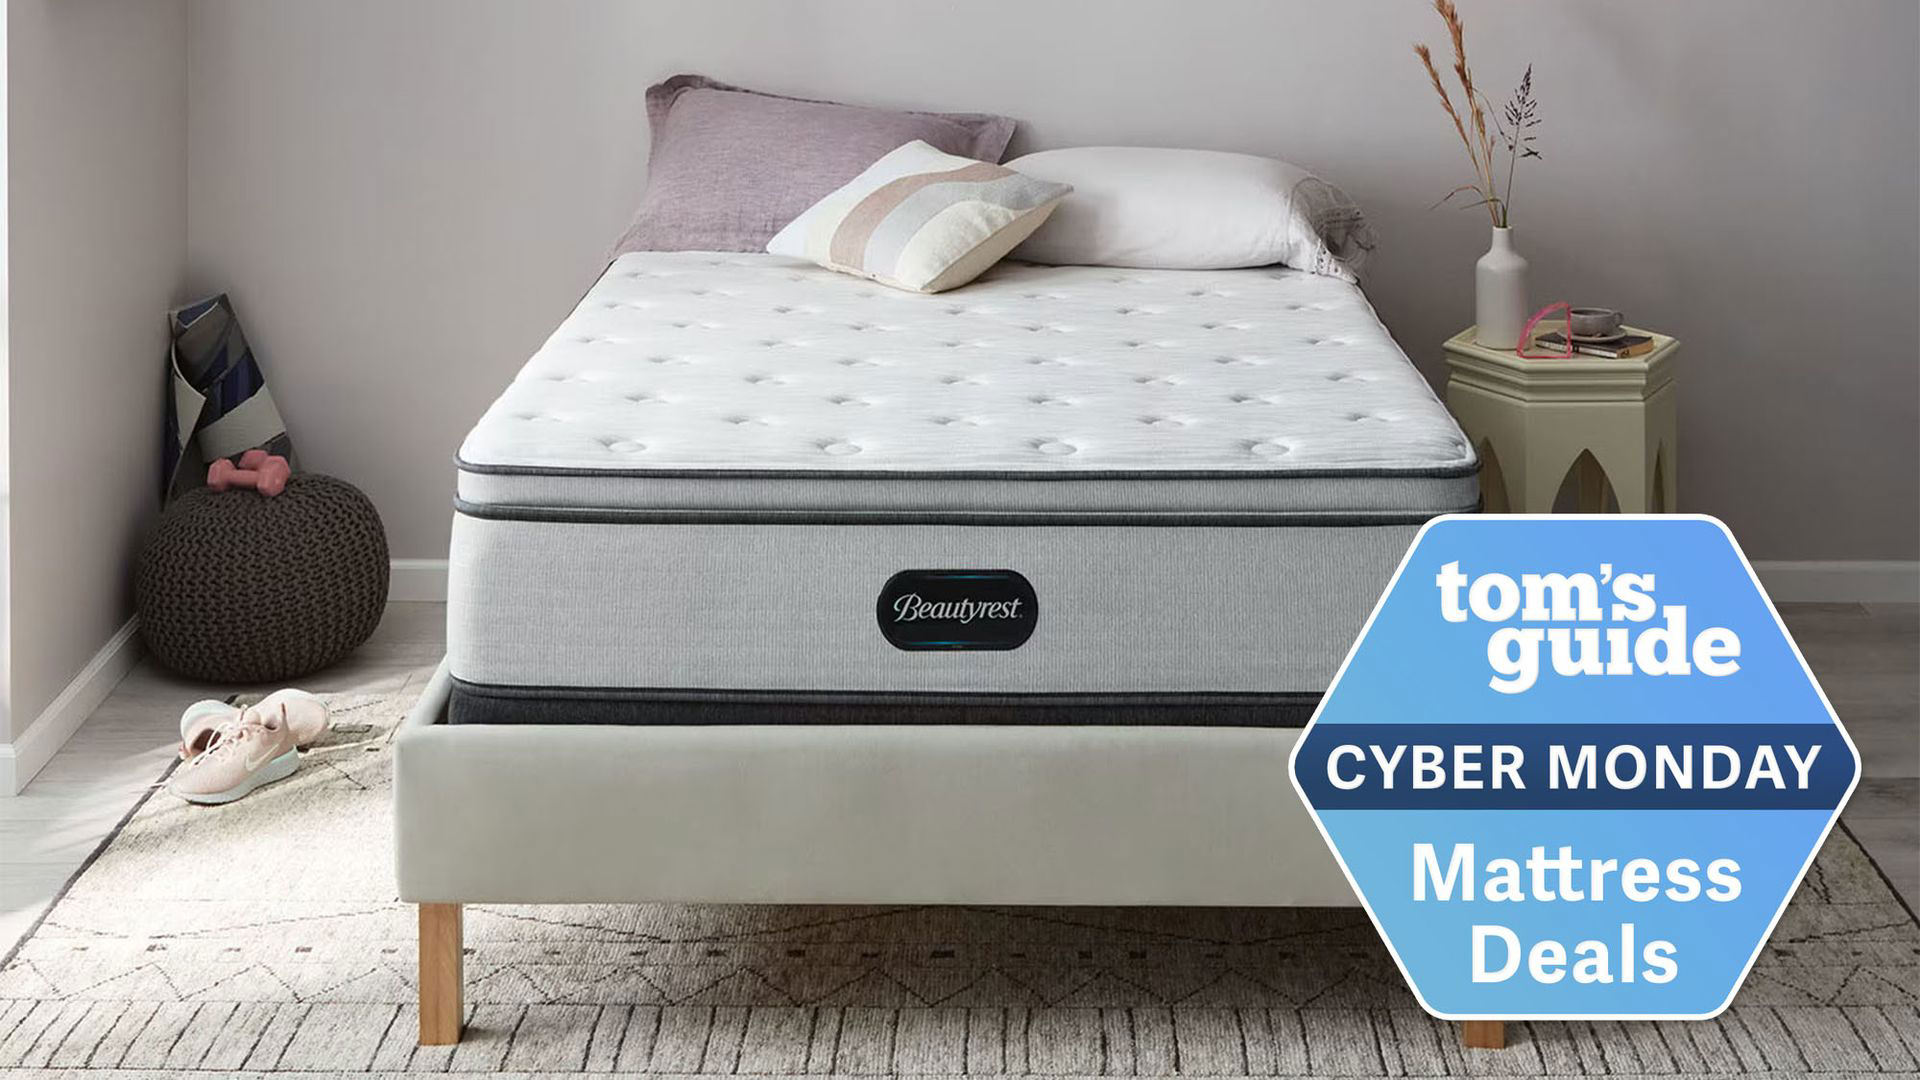 beautyrest mattress sale cyber monday